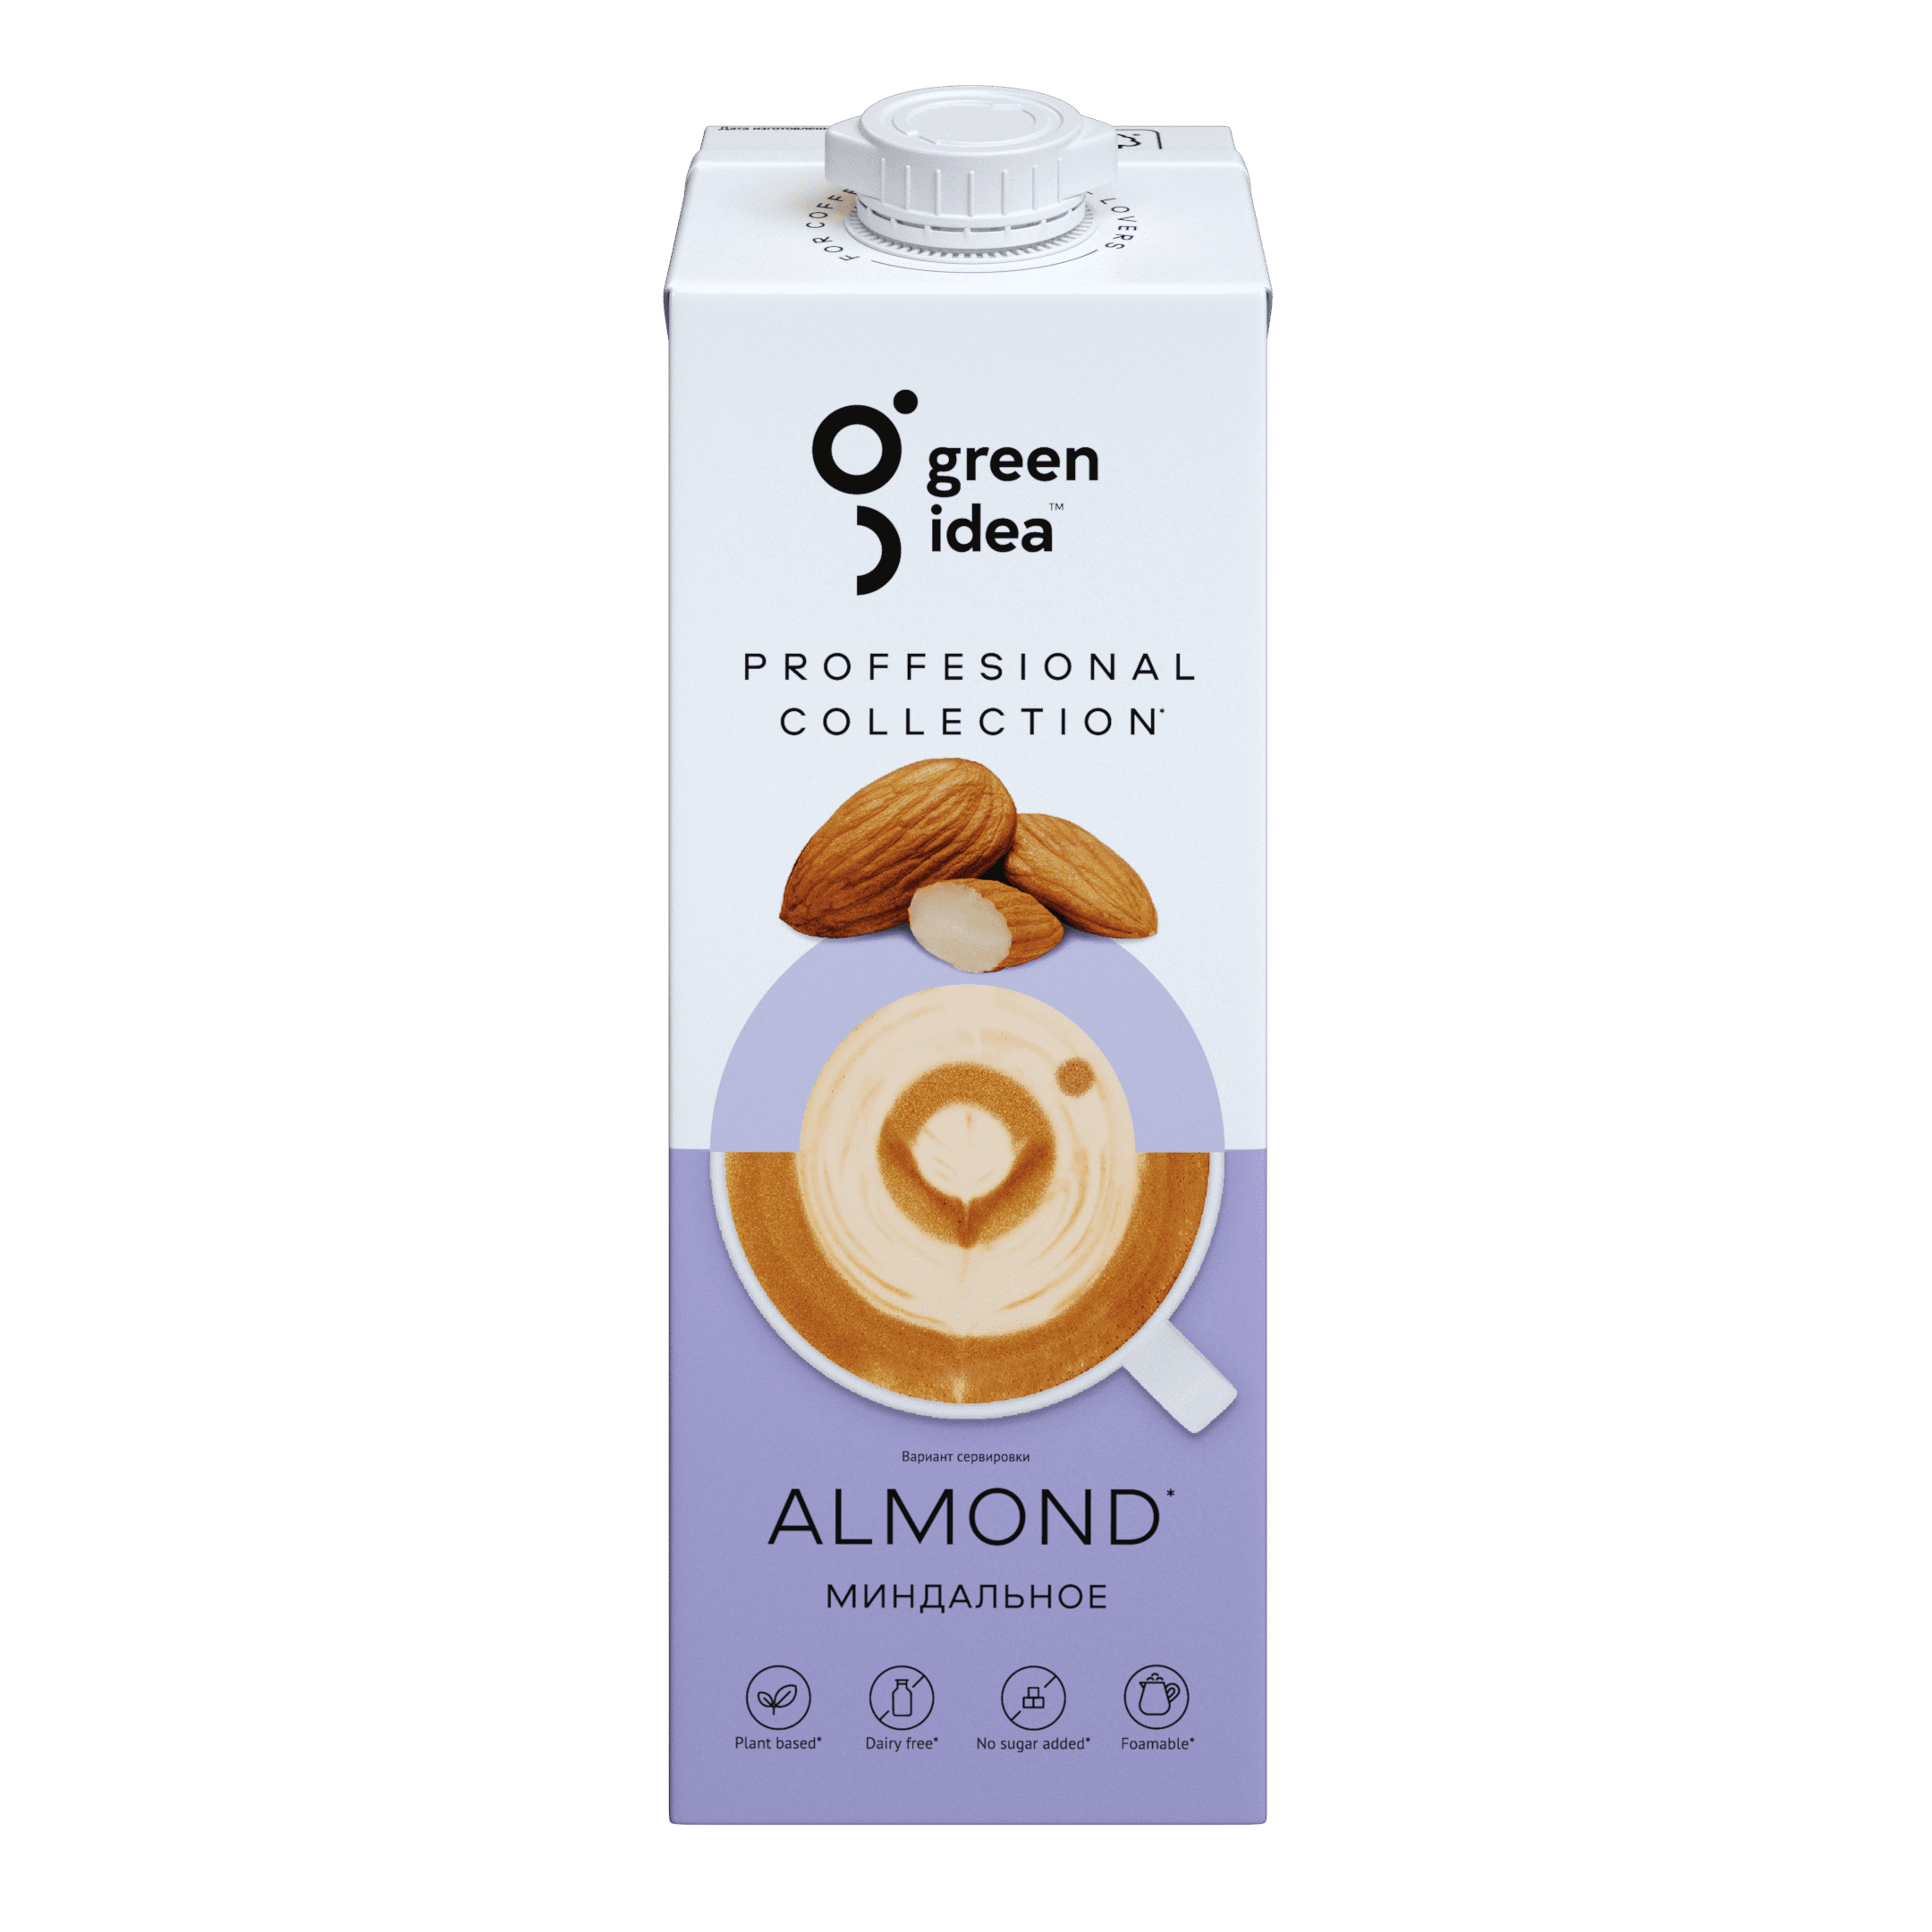 Almond Green Idea Beverage, 1 l